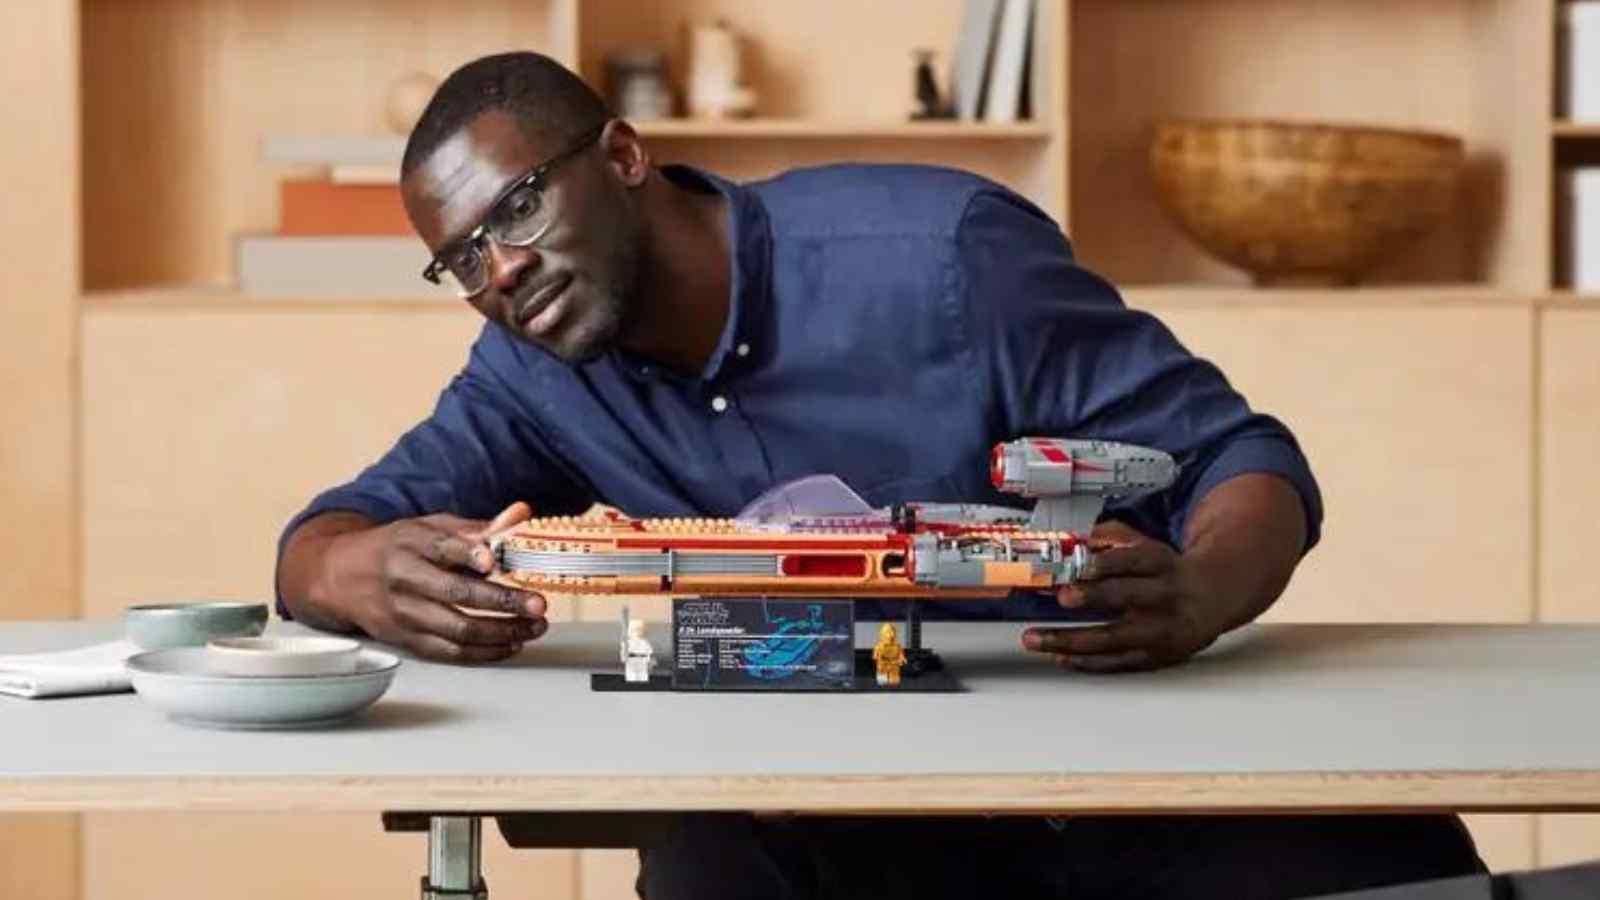 An adult with their LEGO Star Wars Landspeeder